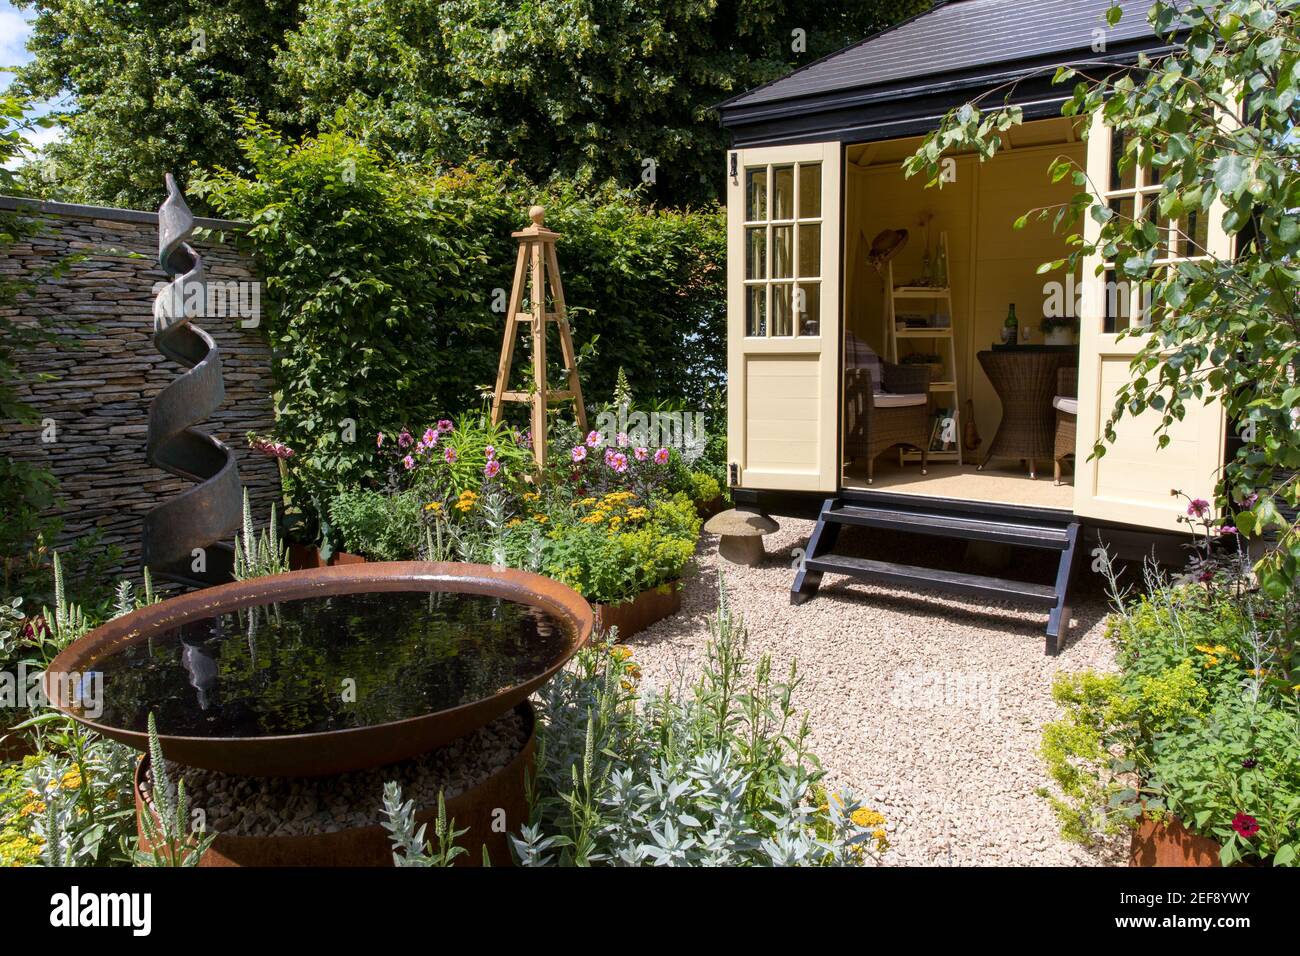 Ein kleiner englischer Cottage-Garten mit Summerhouse Shepherds Hut in Kiesgarten - Arbeit vom Home Office - Wasserspiel Spiralskulptur Obelisk UK Stockfoto